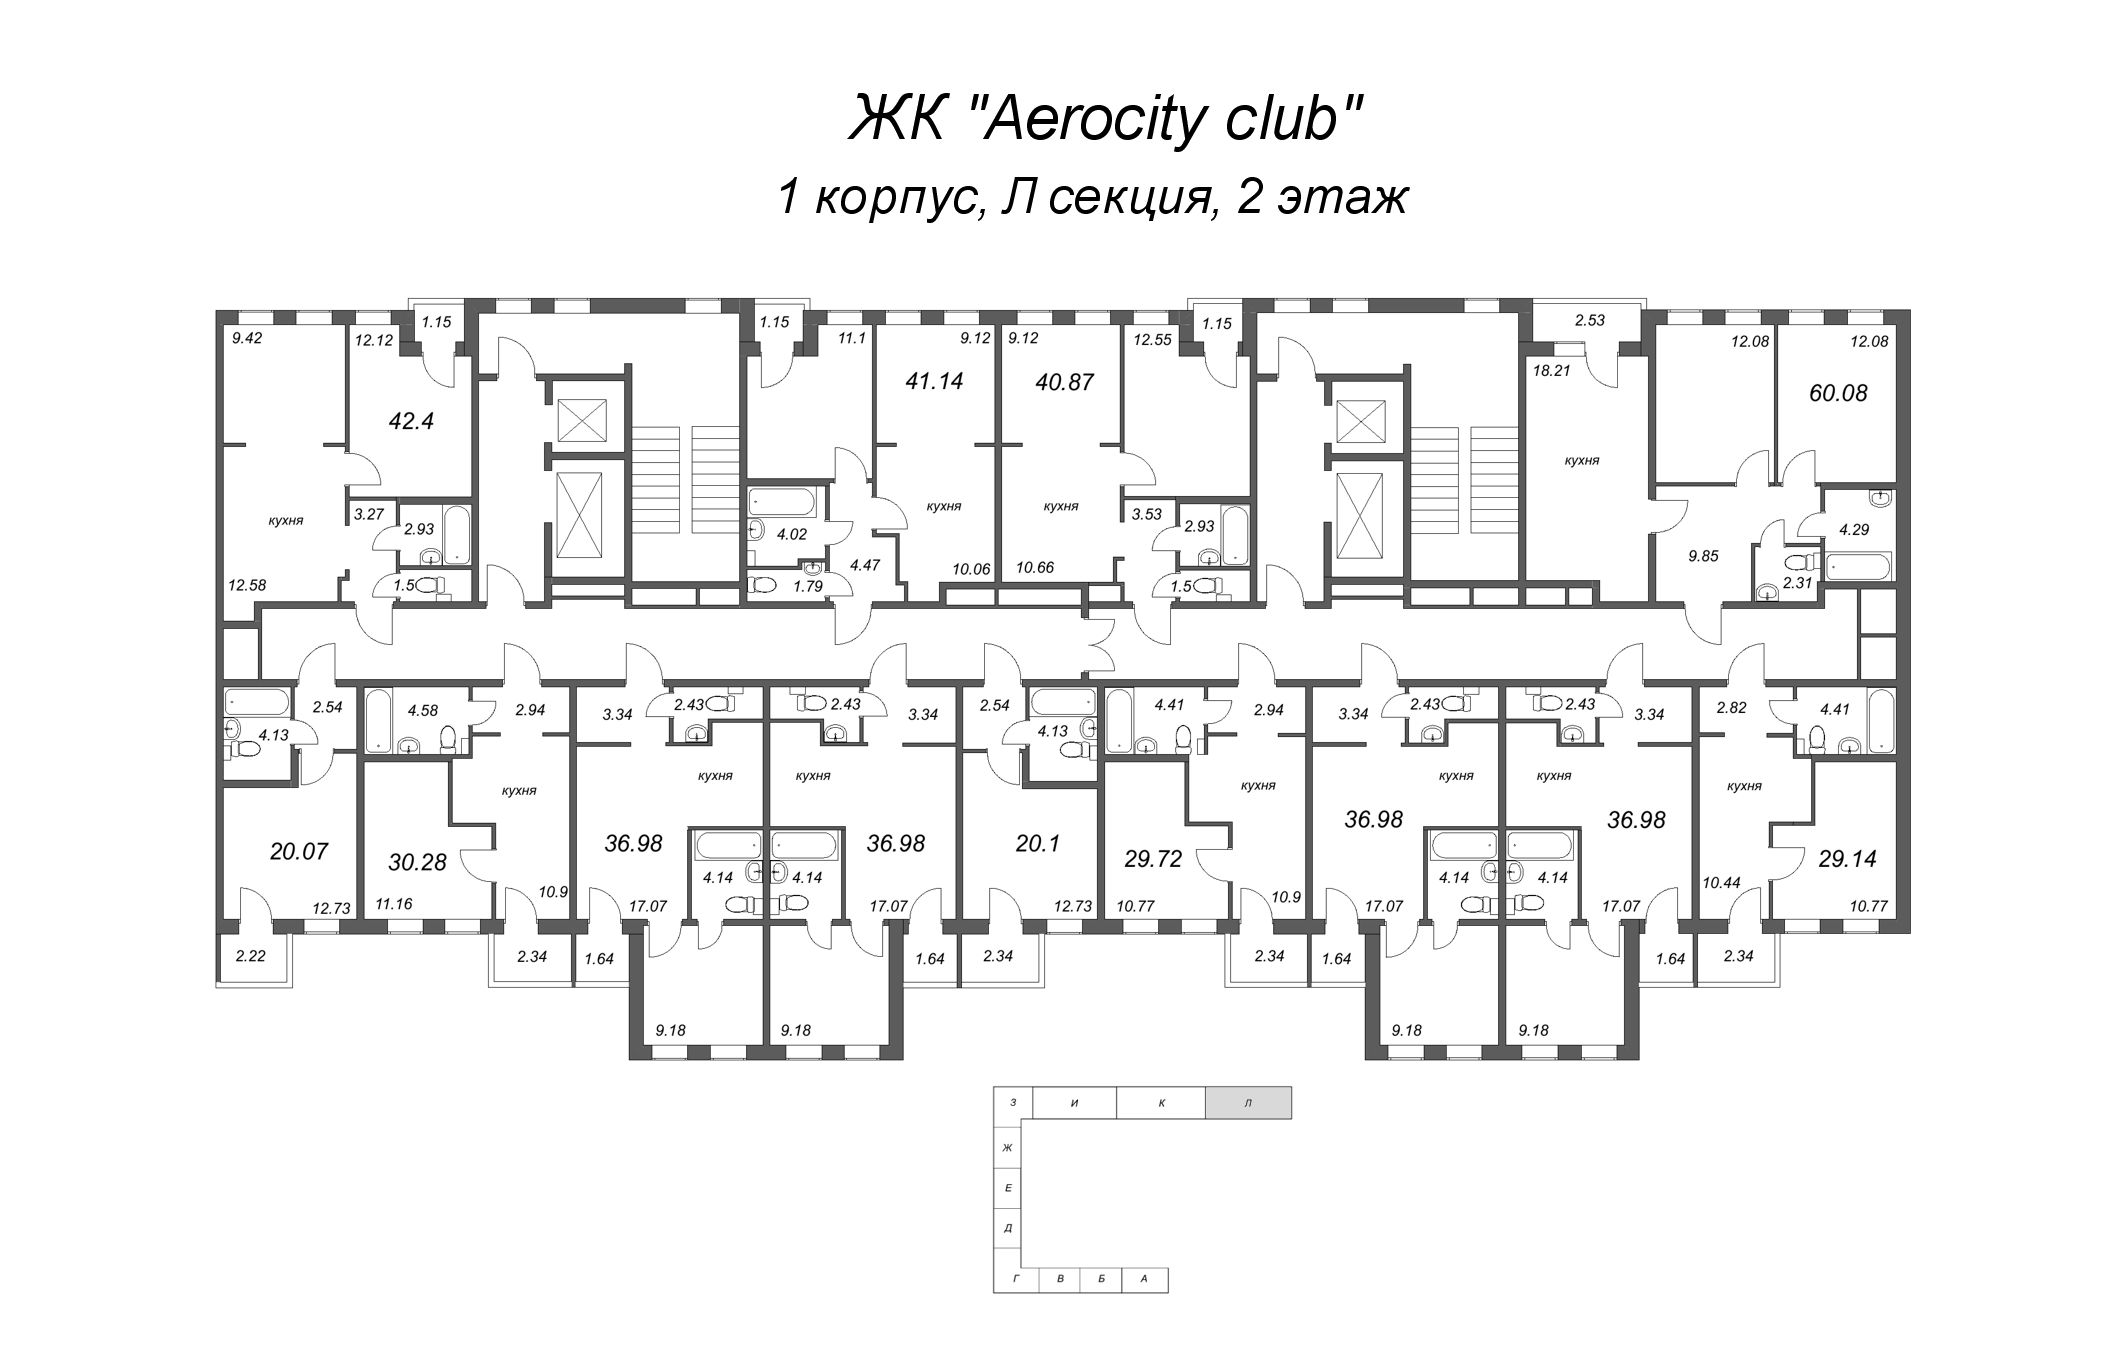 2-комнатная (Евро) квартира, 36.98 м² в ЖК "AEROCITY Club" - планировка этажа